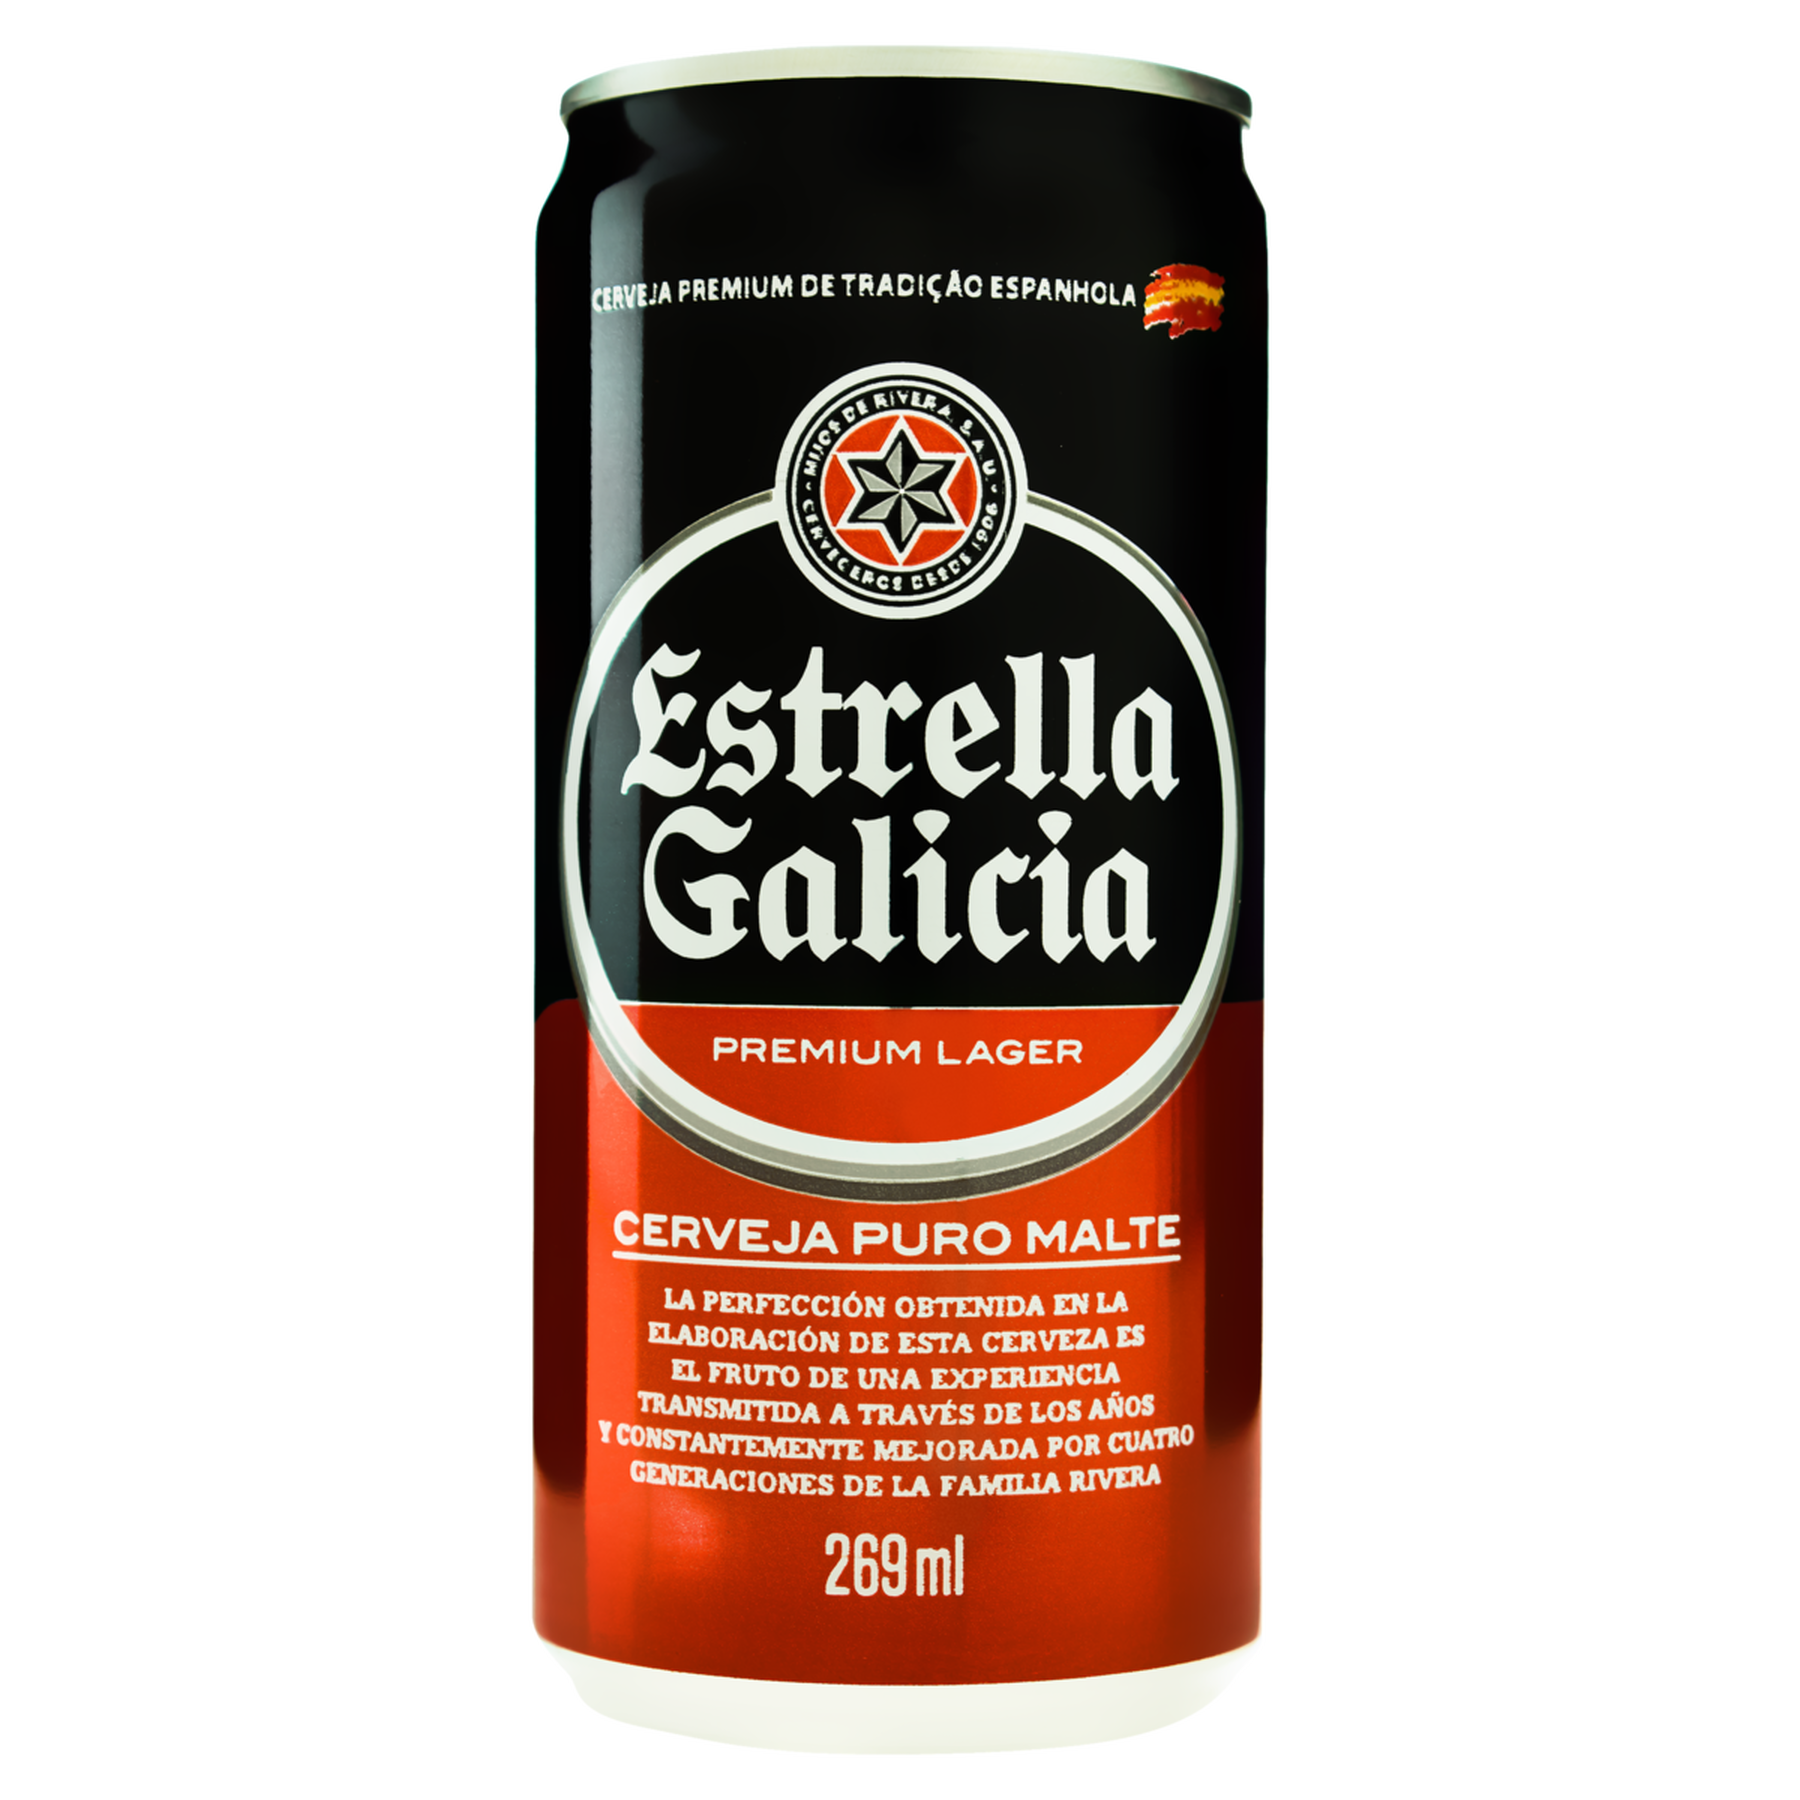 Cerveja Lager Premium Puro Malte Estrella Galicia Lata 269ml